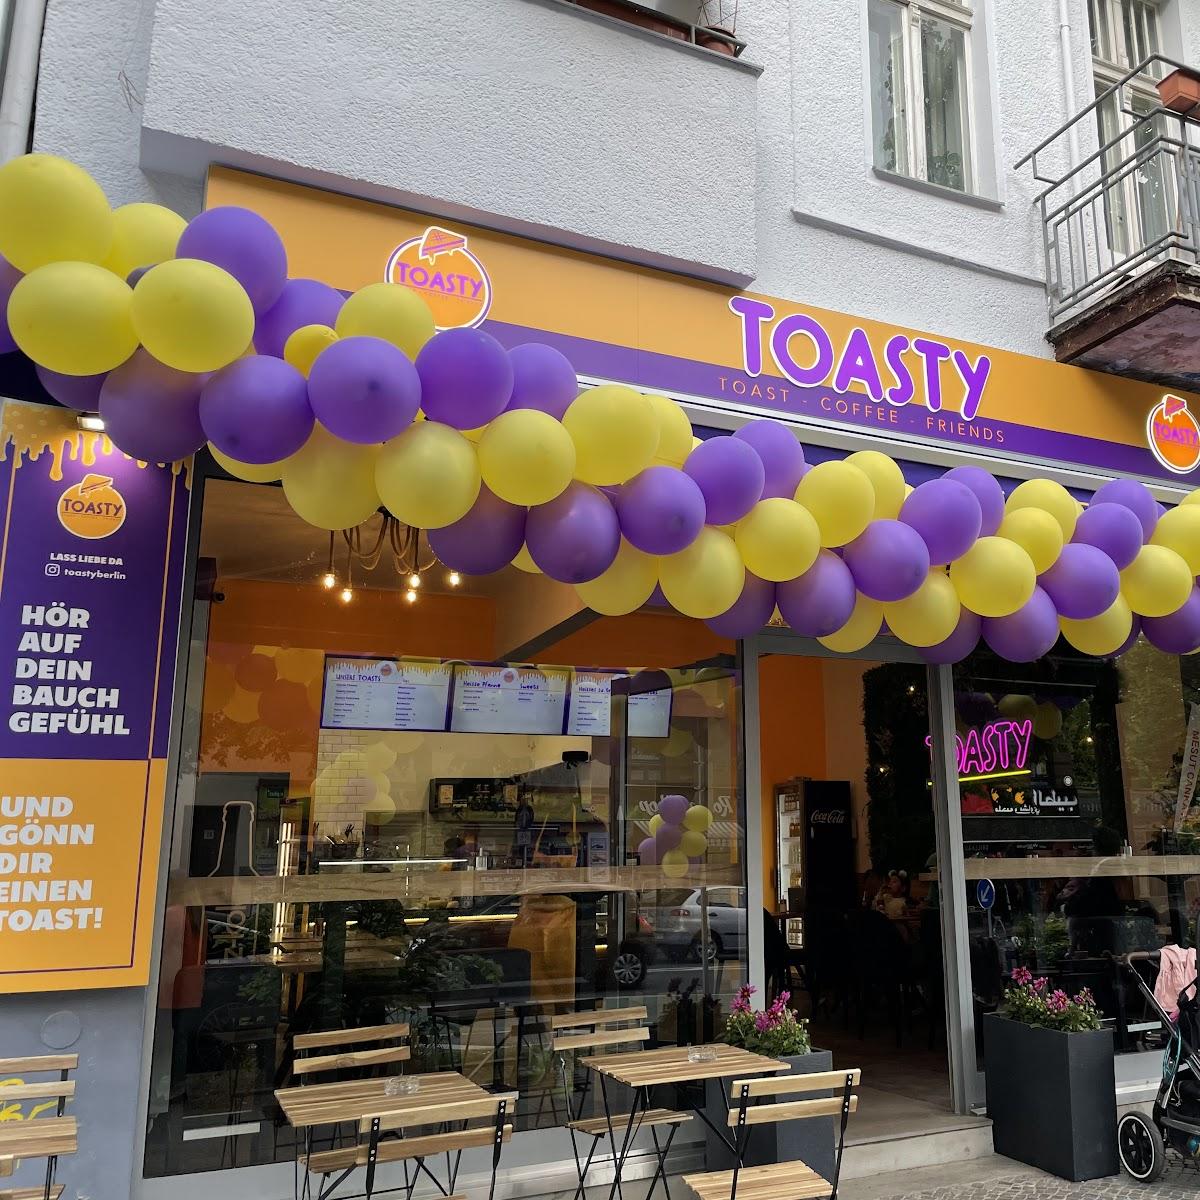 Restaurant "Toasty" in Berlin